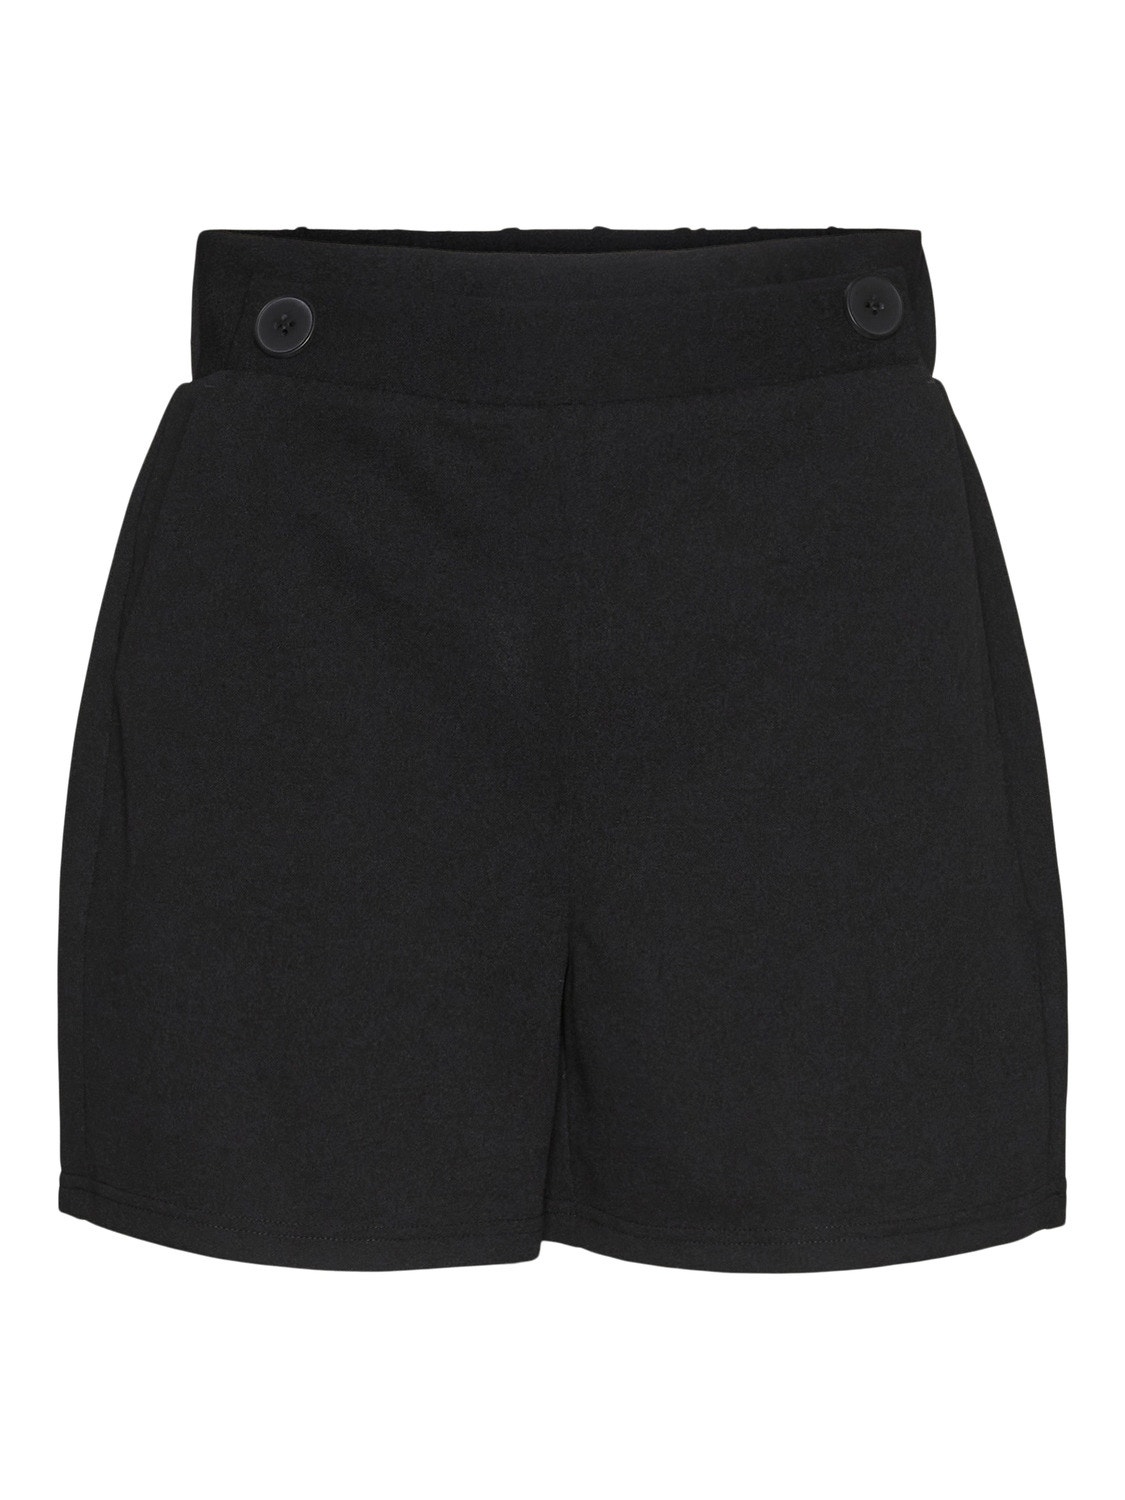 Vero Moda VMLIVA Shorts -Black - 10301724